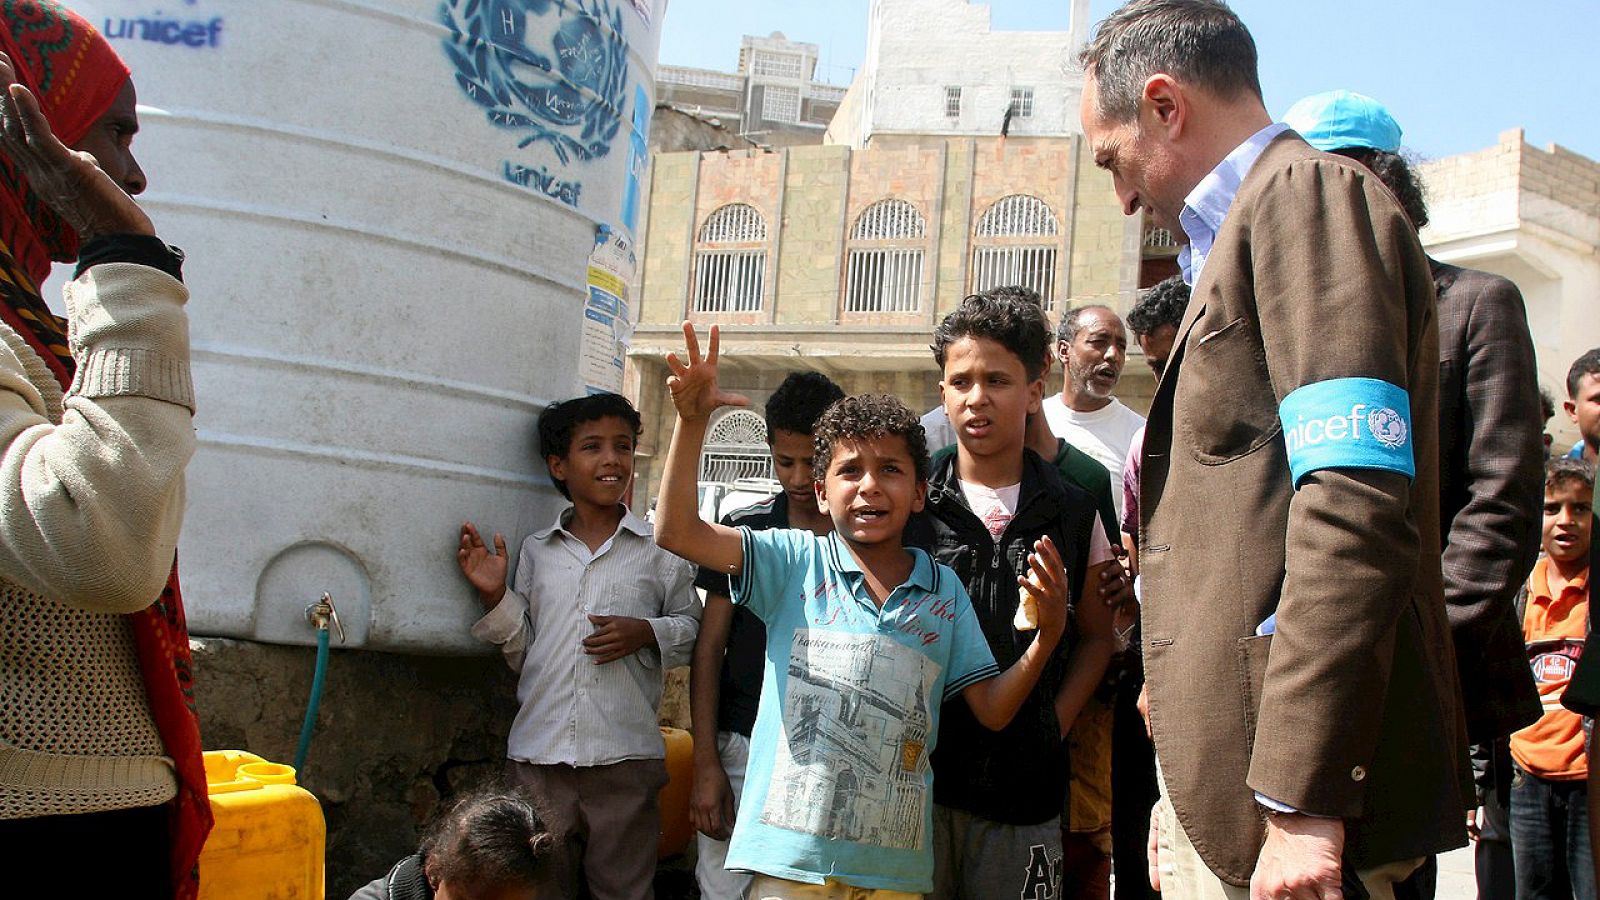 El representante de Unicef en Yemen, Julien Harneis, escucha a un niño durante su visita a la ciudad de Taiz, el 2 de enero de 2016. REUTERS/Anees Mahyoub